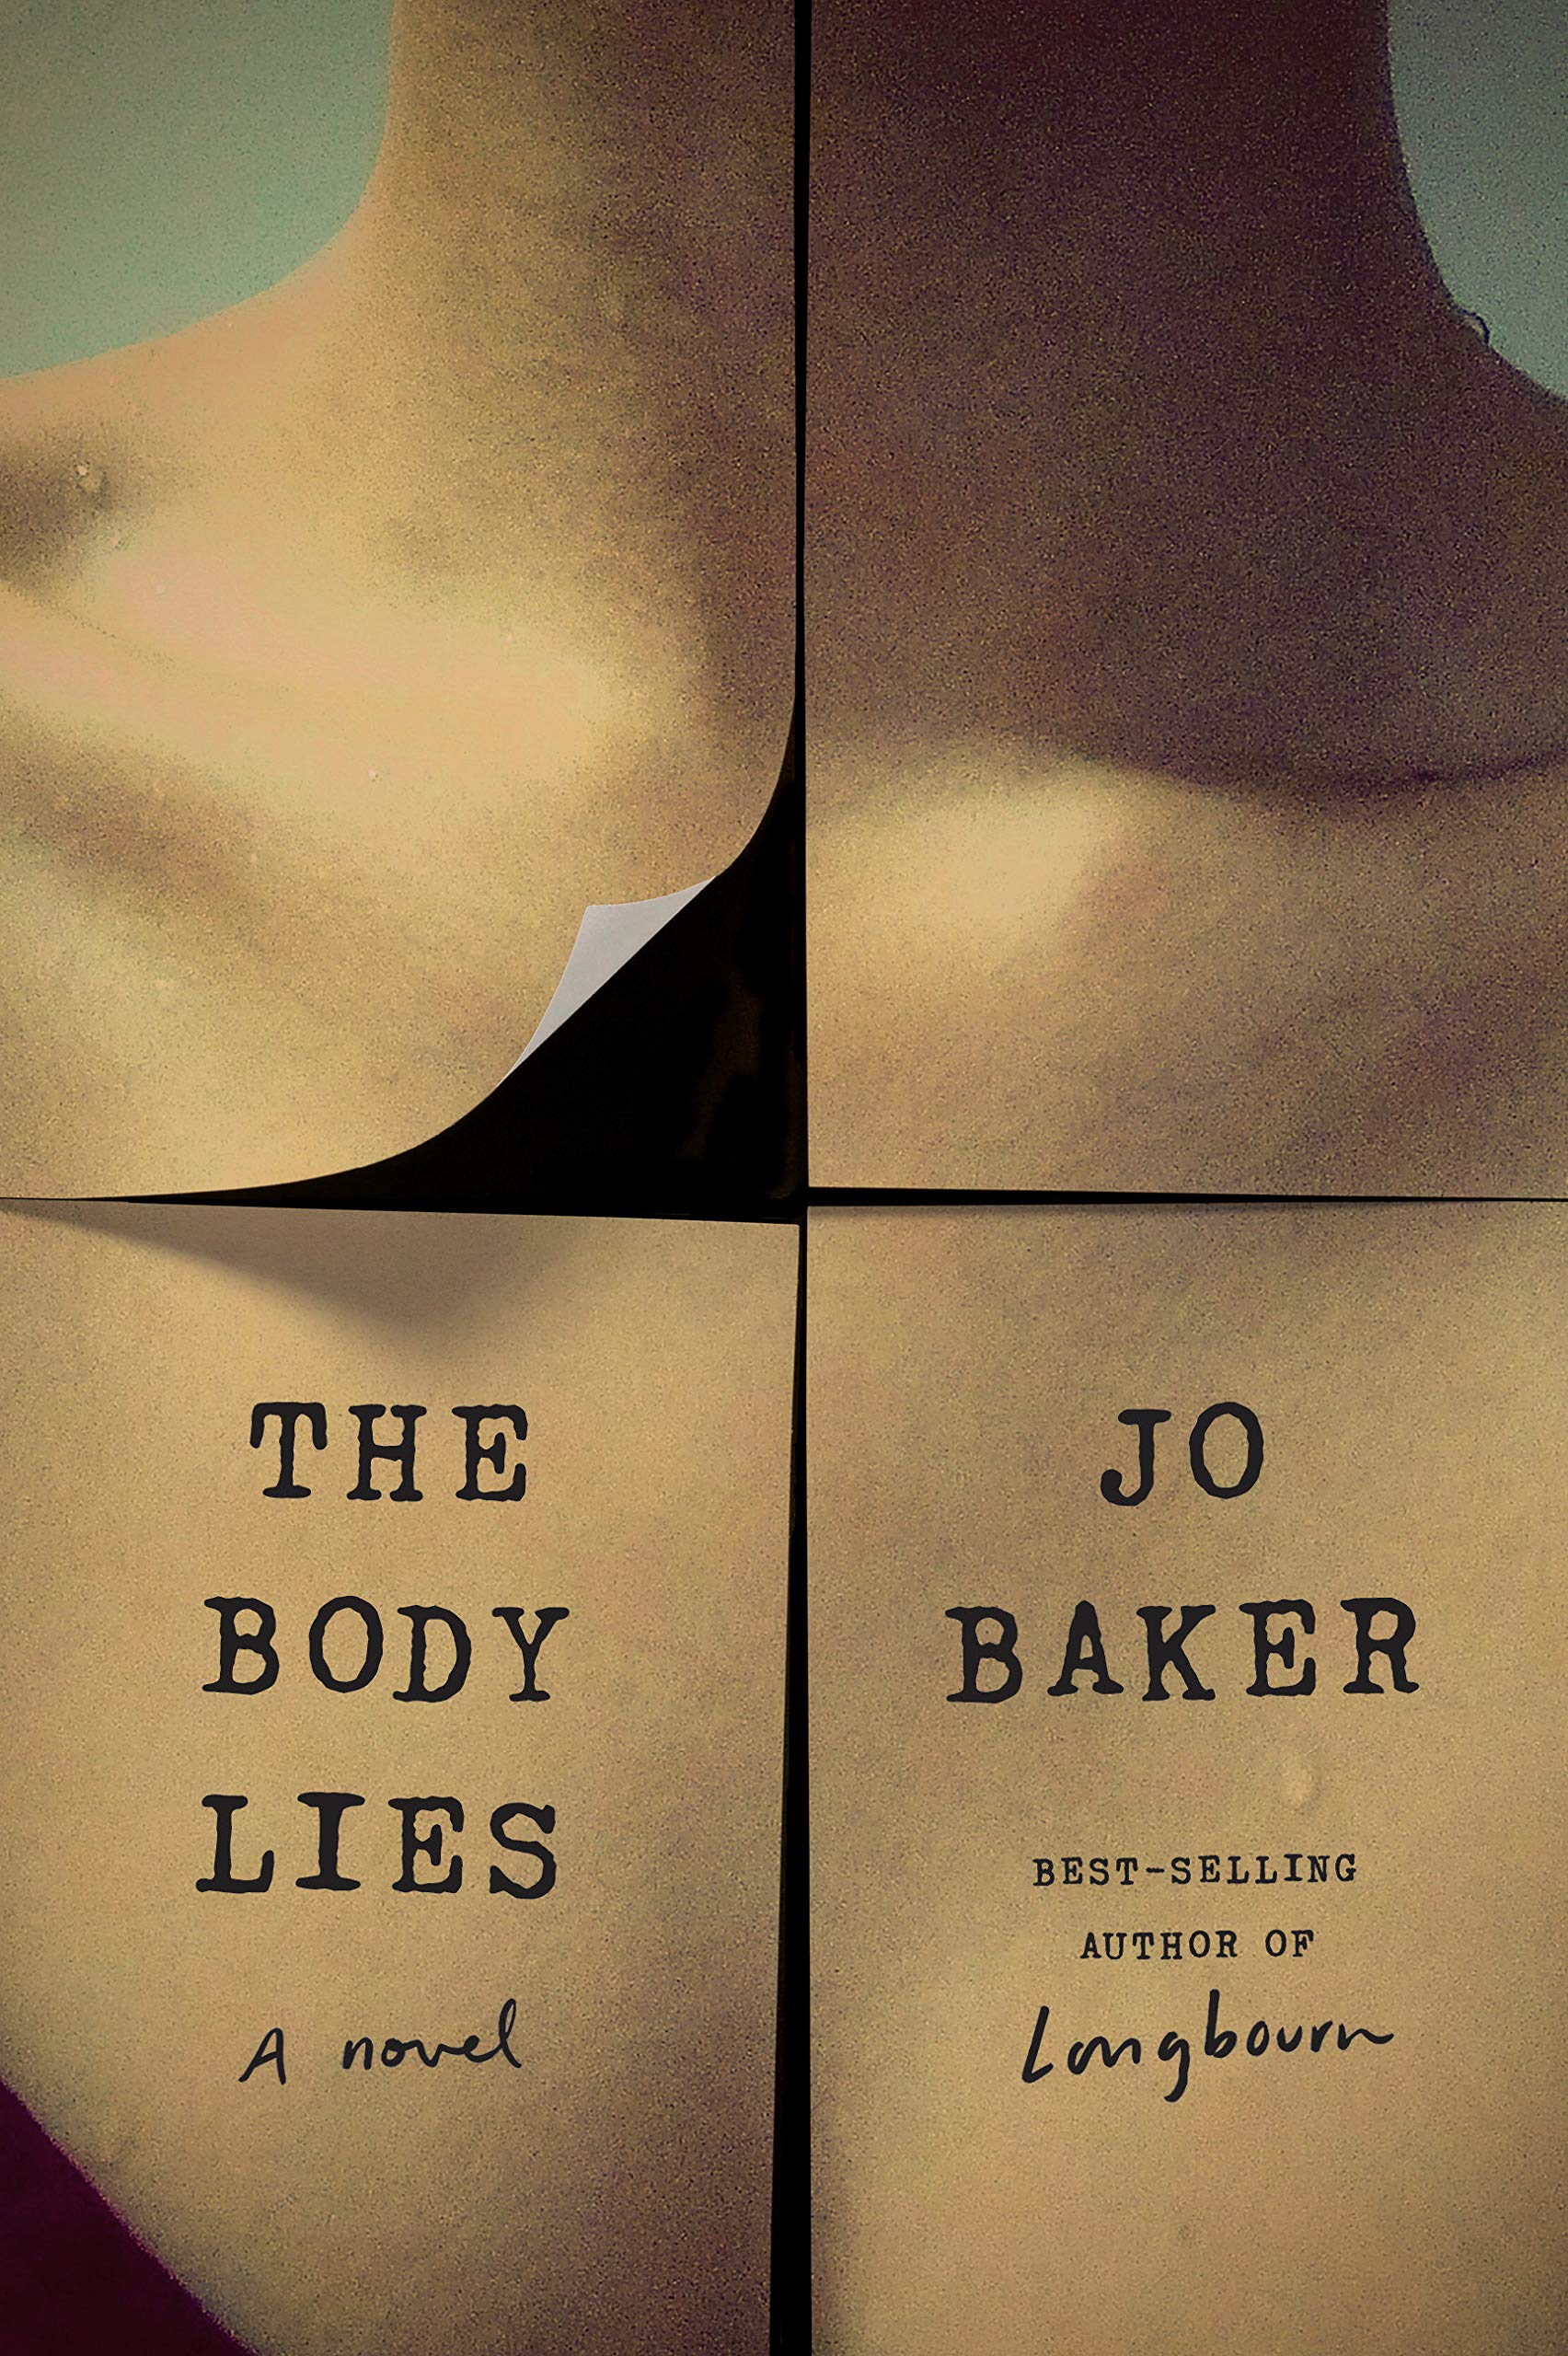 The Body Lies: A novel